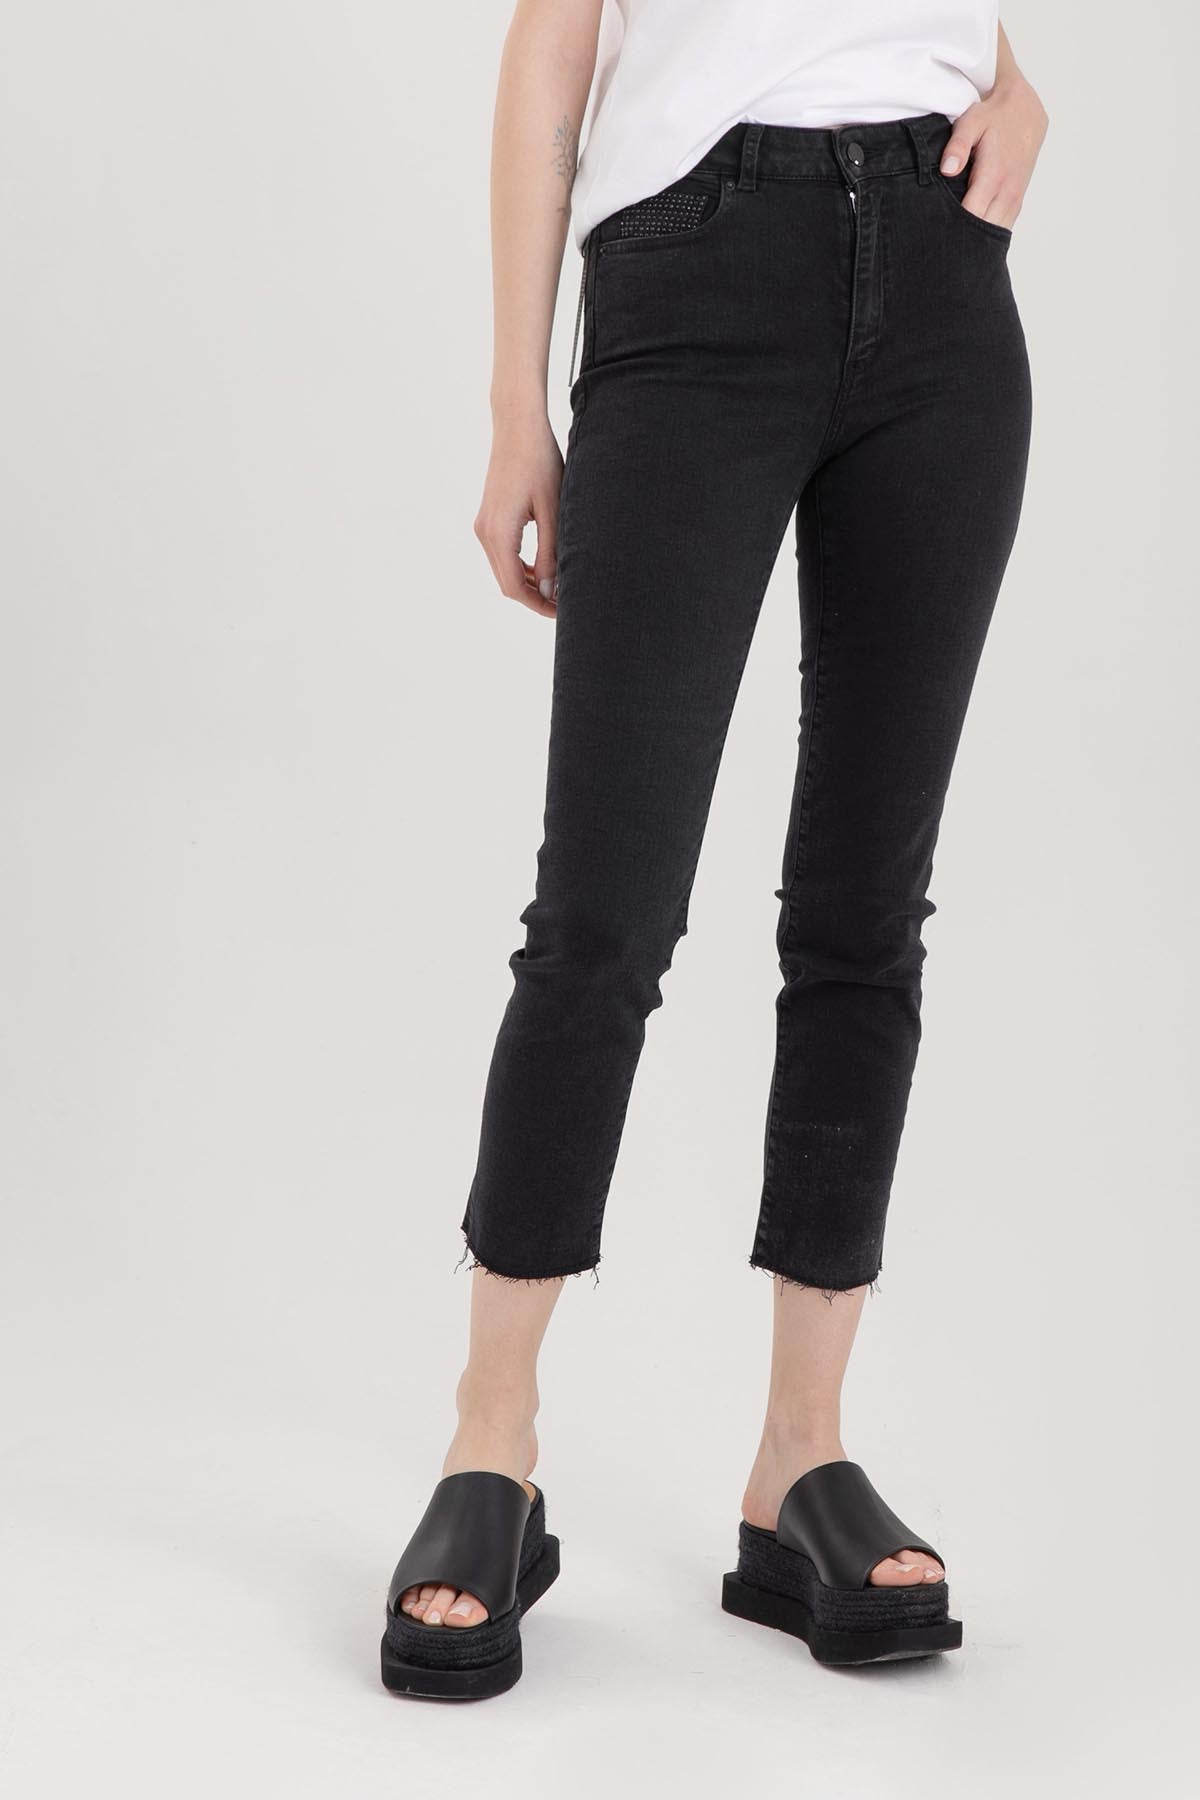 Replay Faaby Yüksek Bel Cigarette Crop Fit Yıkamalı Jeans-Libas Trendy Fashion Store